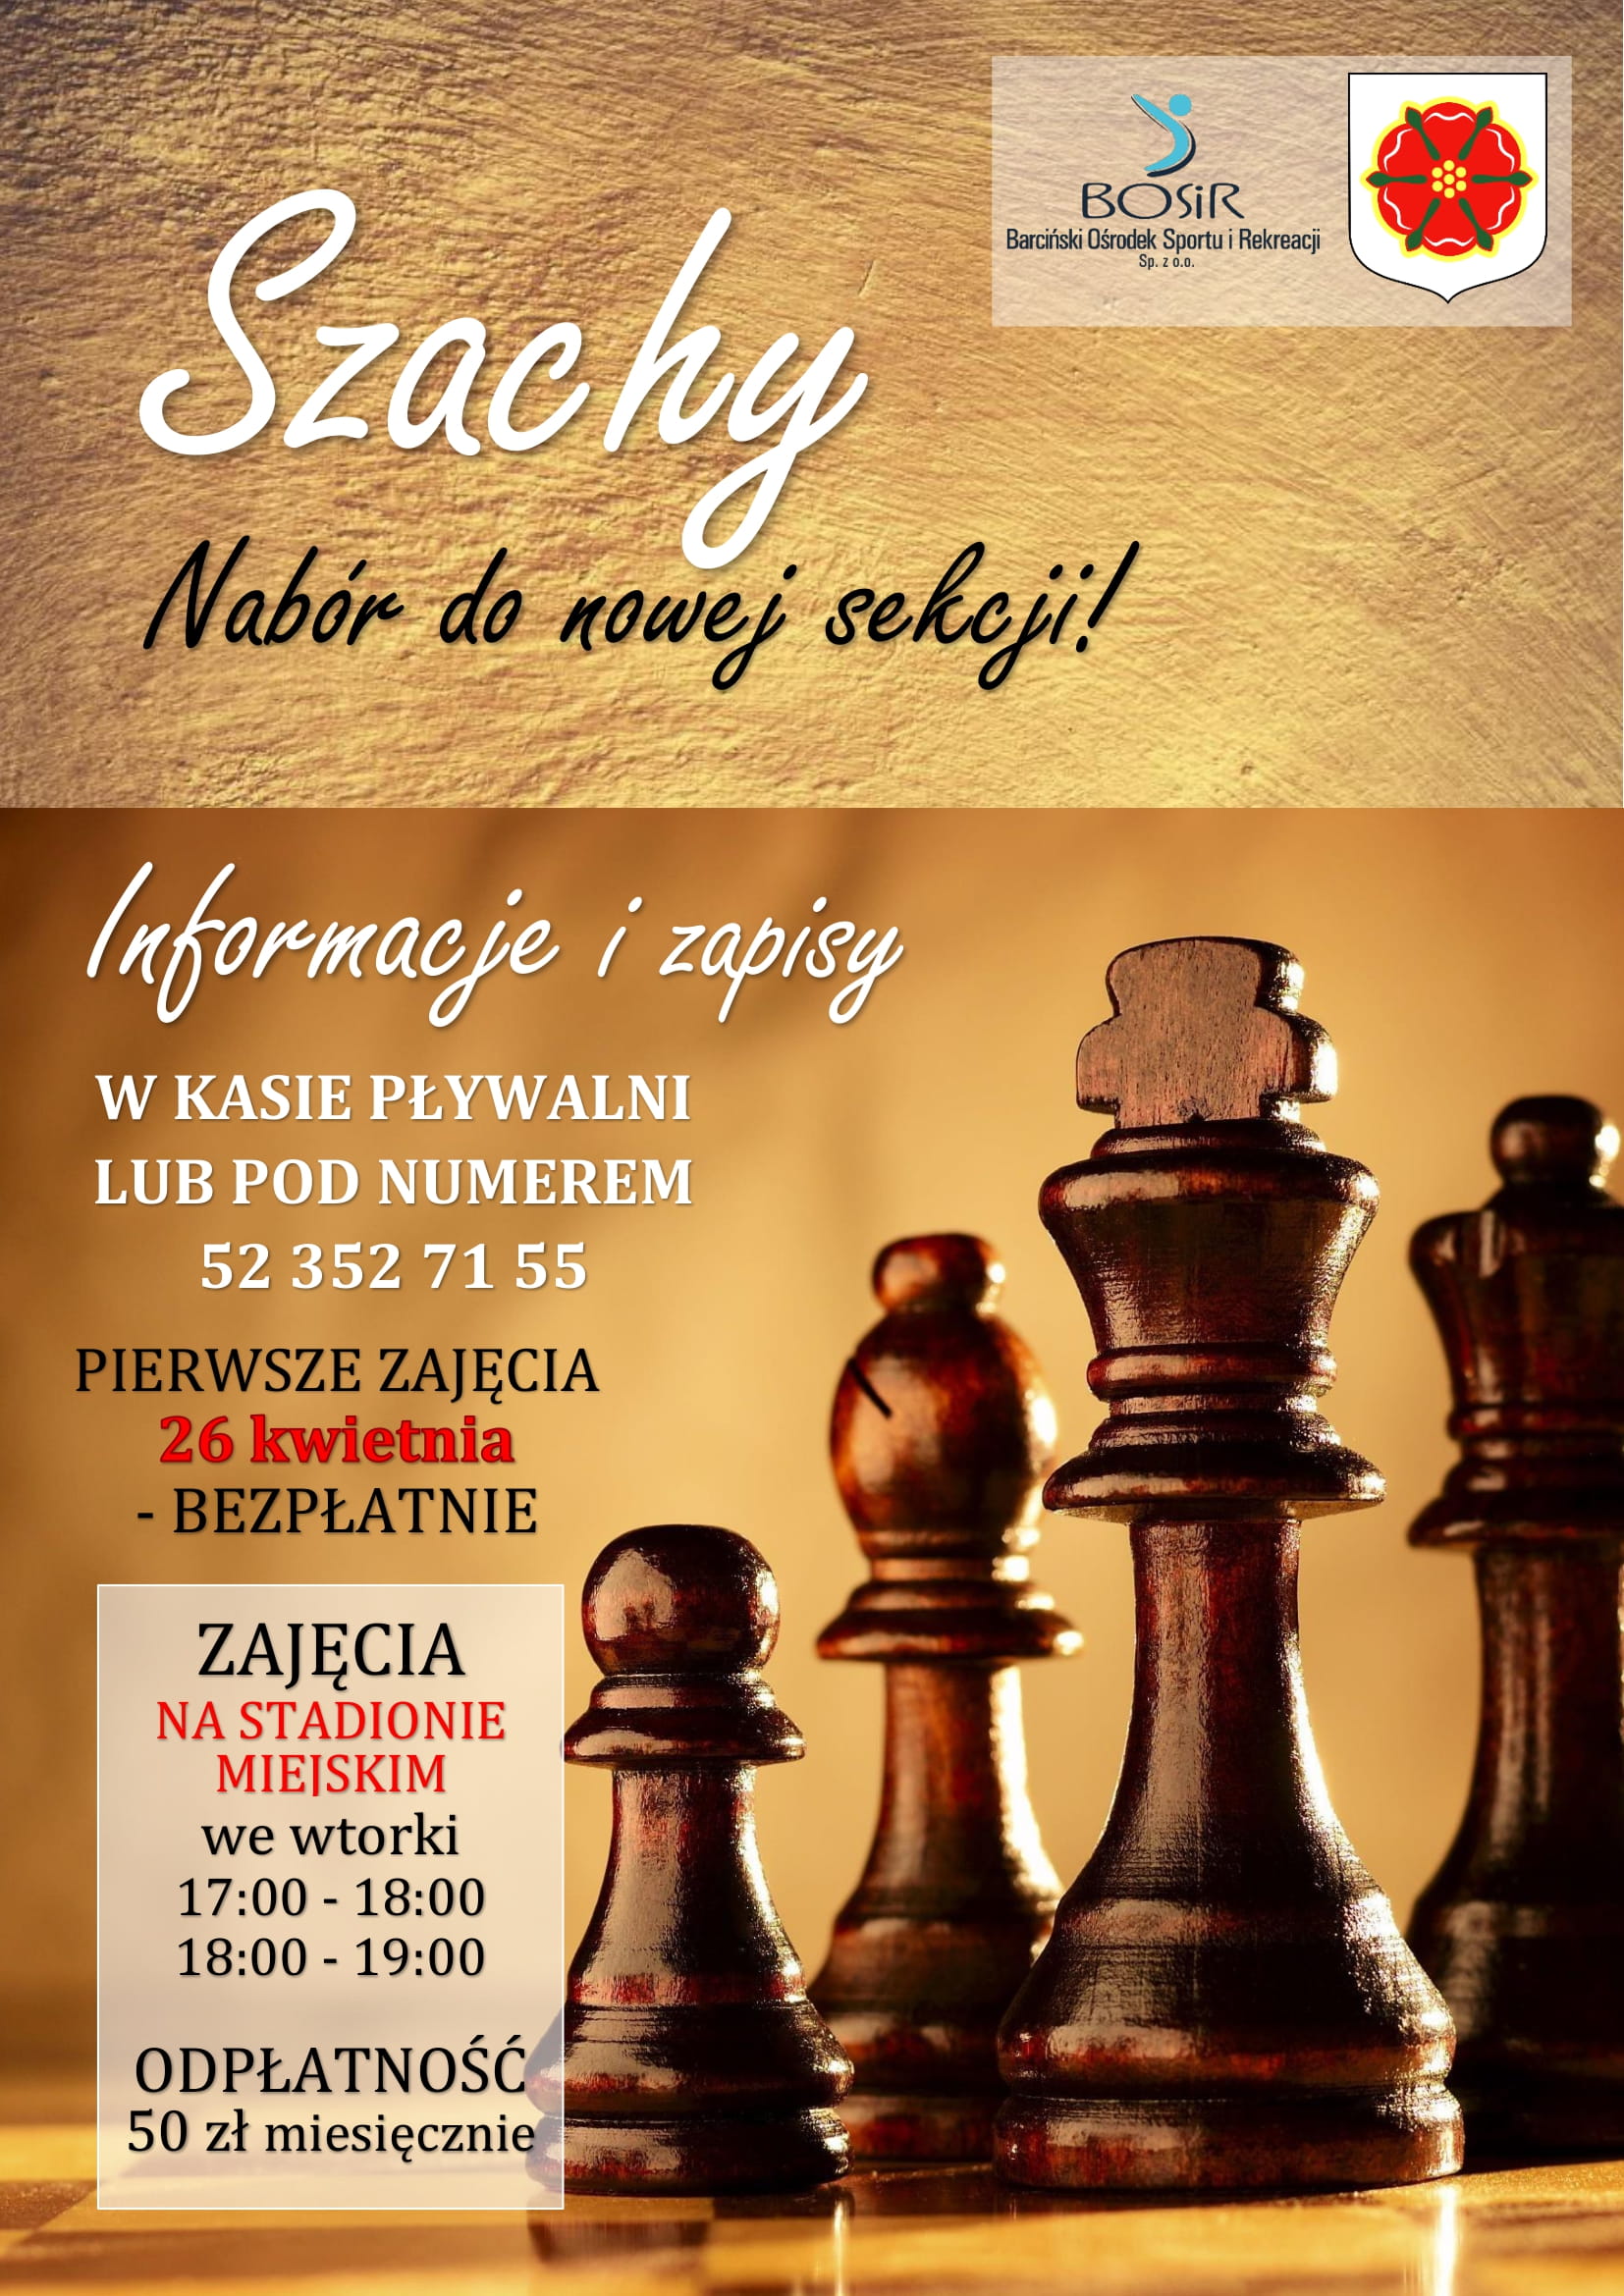 You are currently viewing Szachy – nowe zajęcia na barcińskim stadionie!